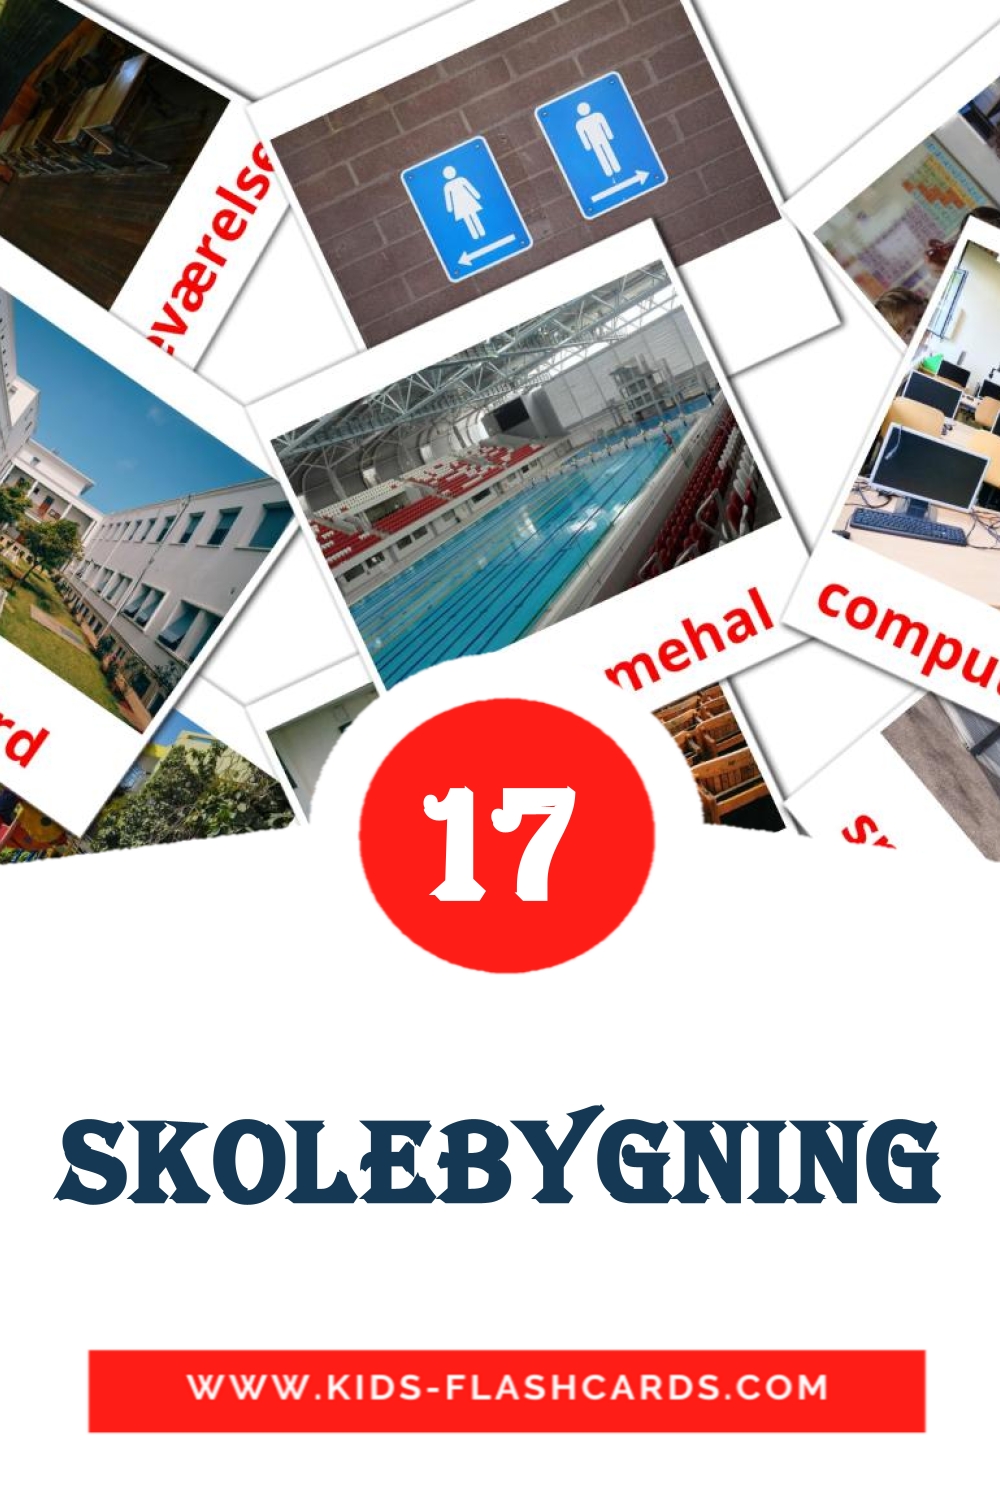 17 Skolebygning fotokaarten voor kleuters in het dansk